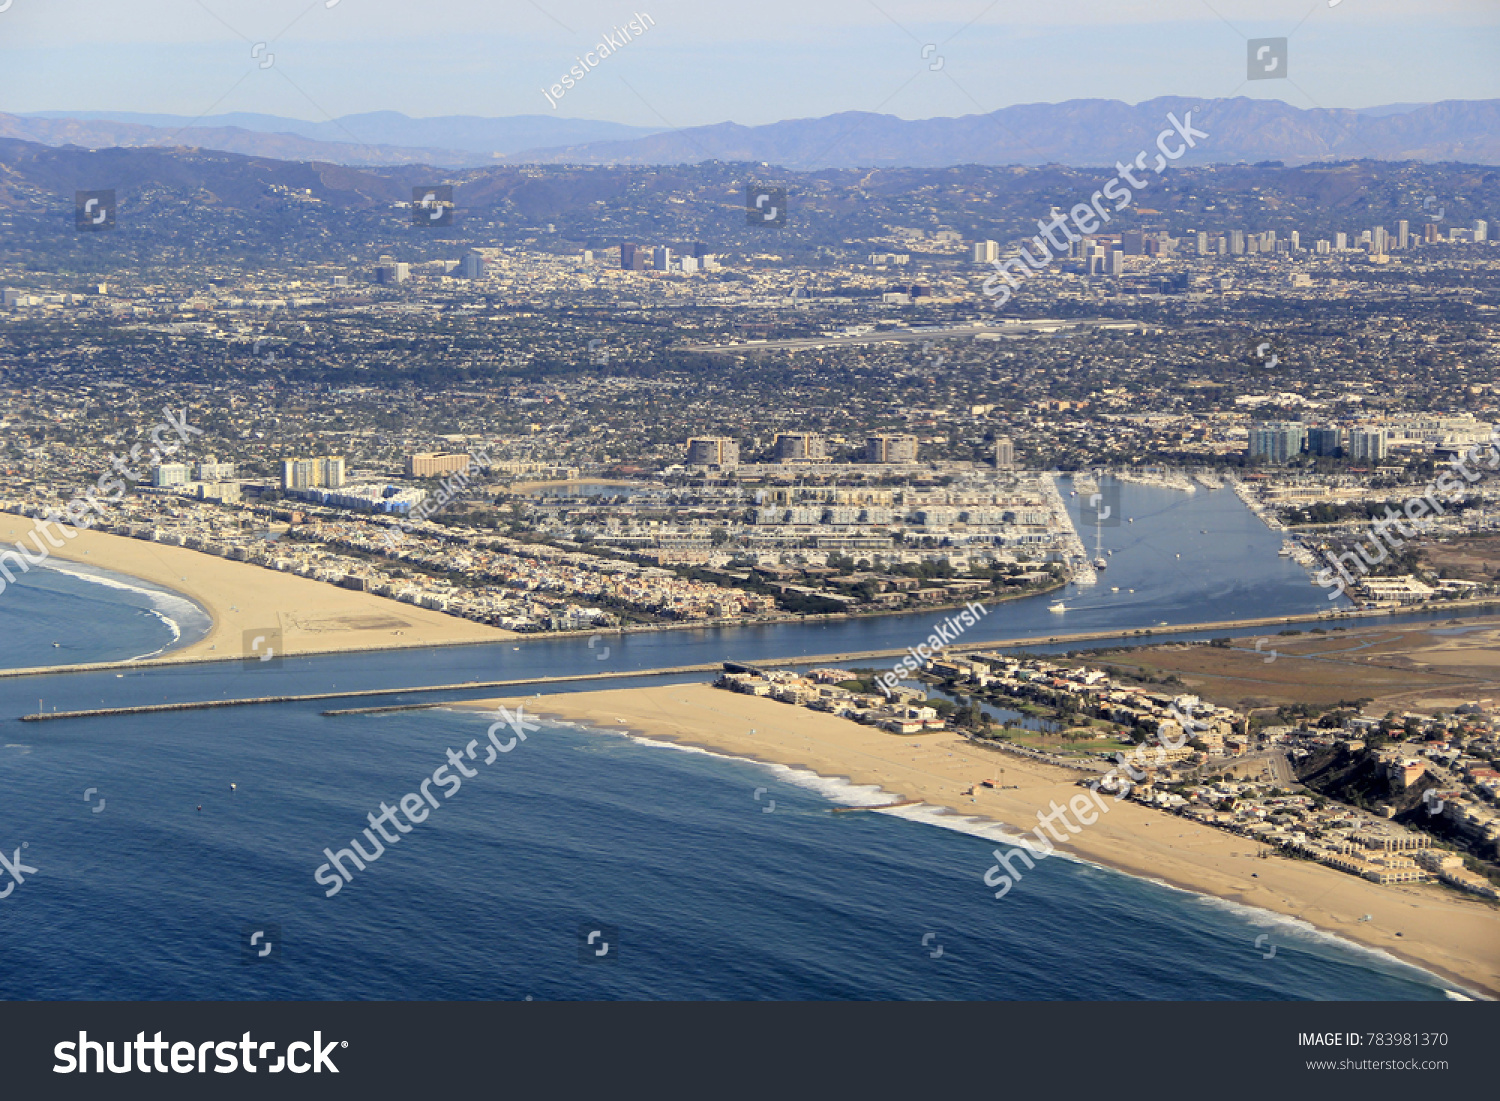 Marina Del Ray Harbor near Los Angeles International Airport (LAX) off the coast of California #783981370